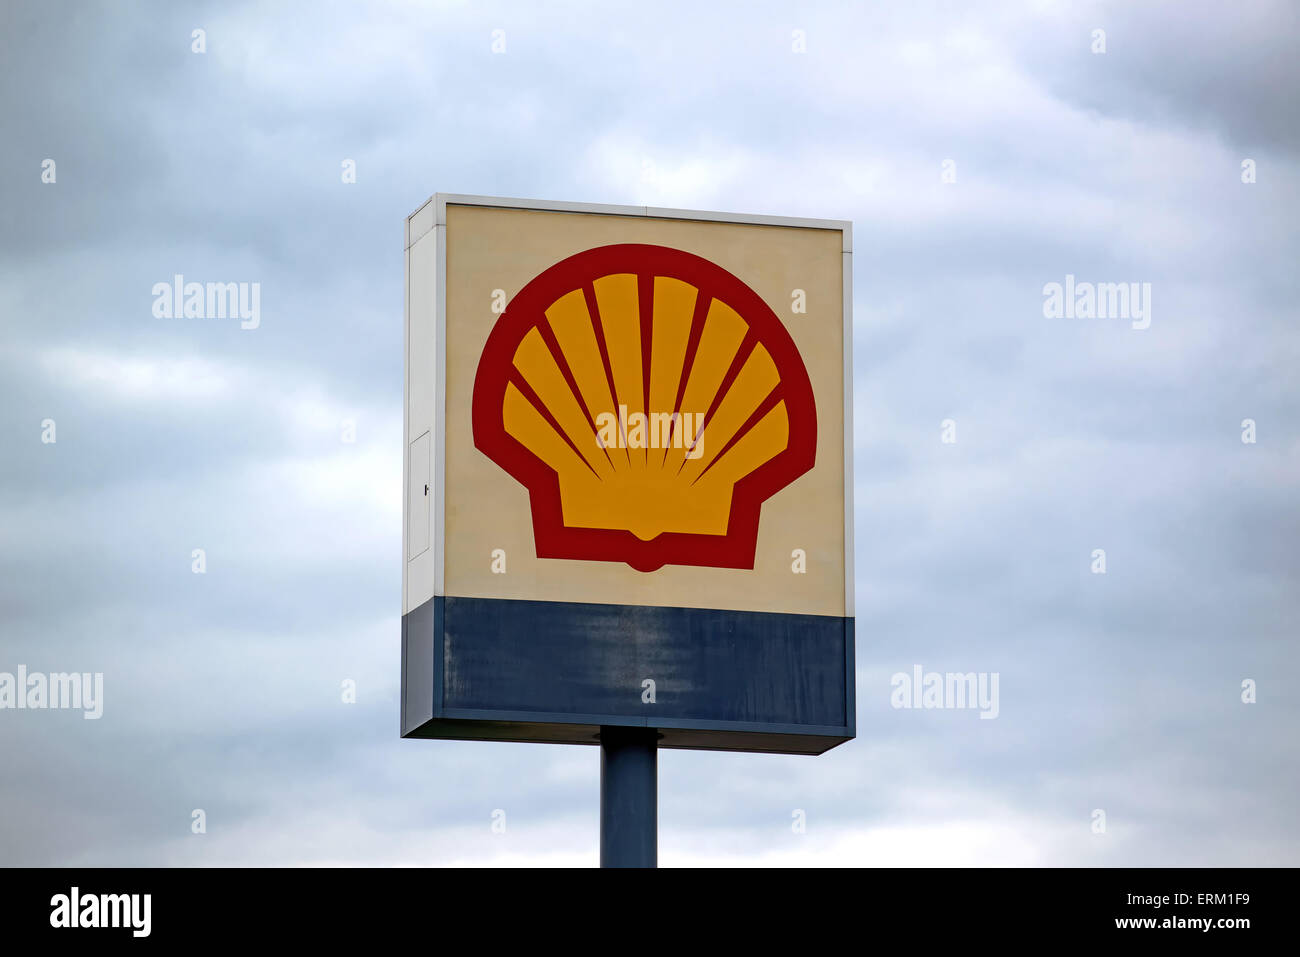 SZEGED, HONGRIE - le 27 mai 2015 : station de remplissage d'huile Shell signe et logo. C'est l'une des plus grandes sociétés pétrolières au monde. Banque D'Images